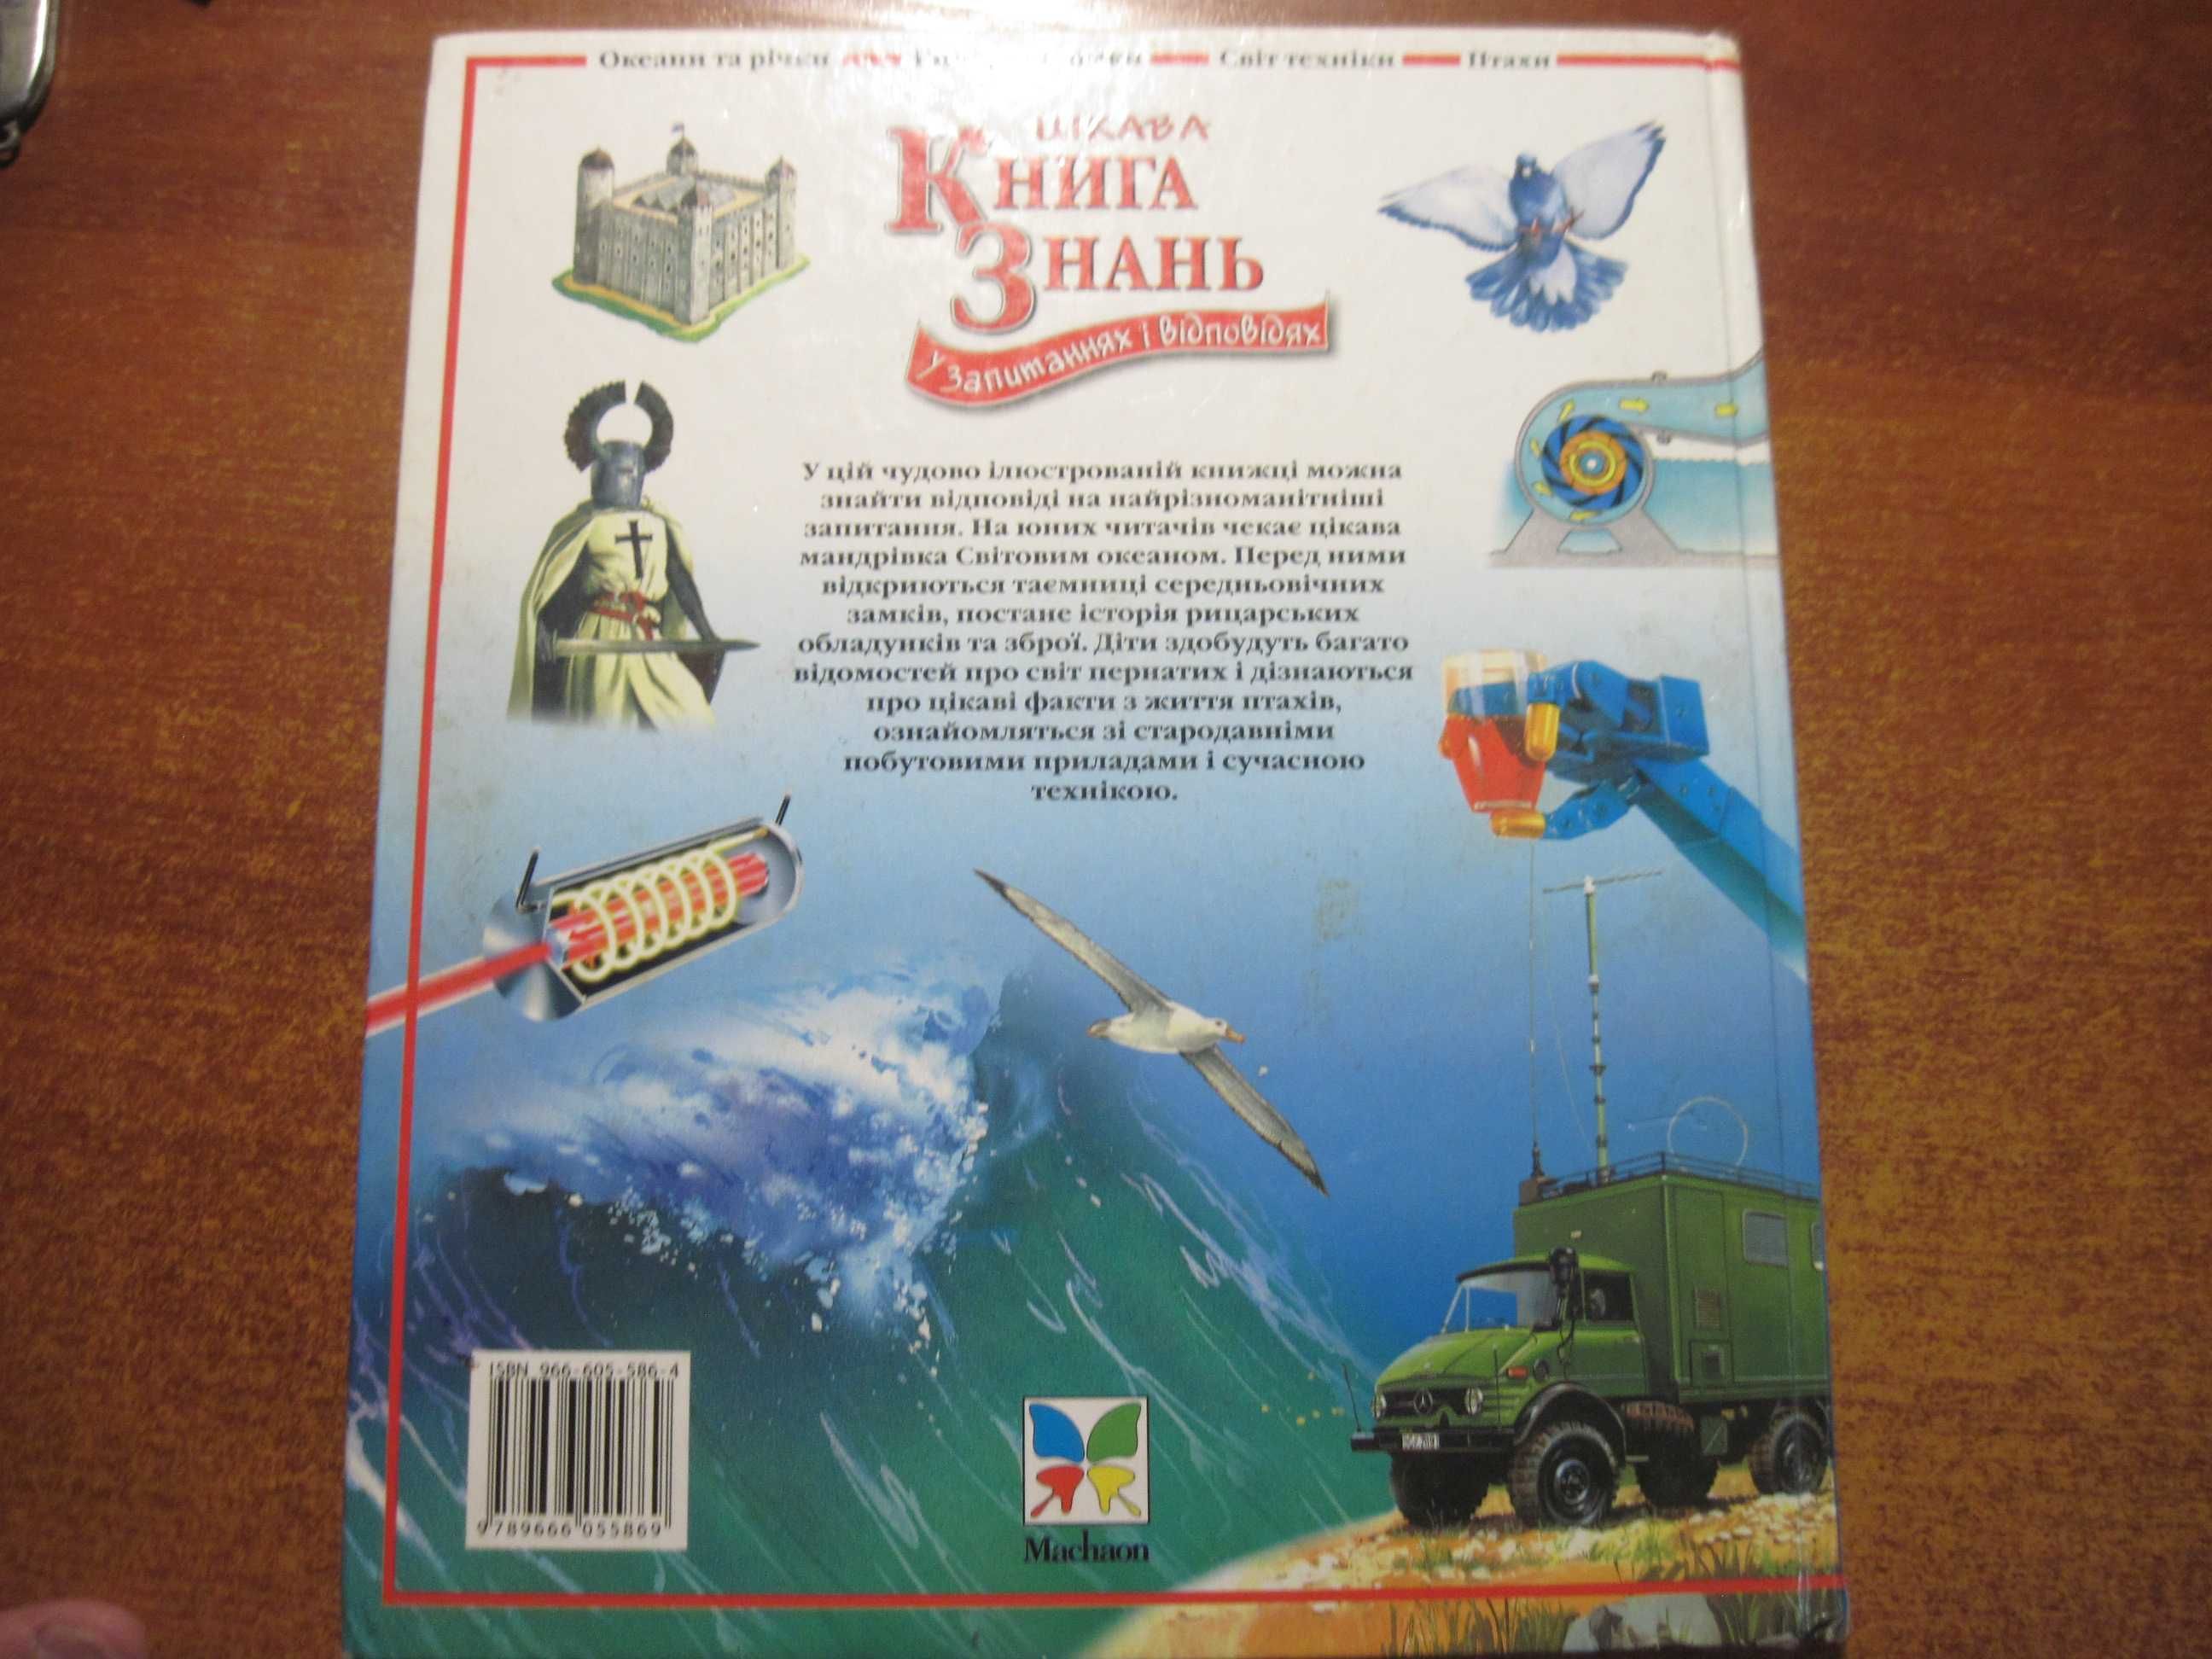 Цікава книга знань. У запитаннях і відповідях. Махаон-Україна 2006